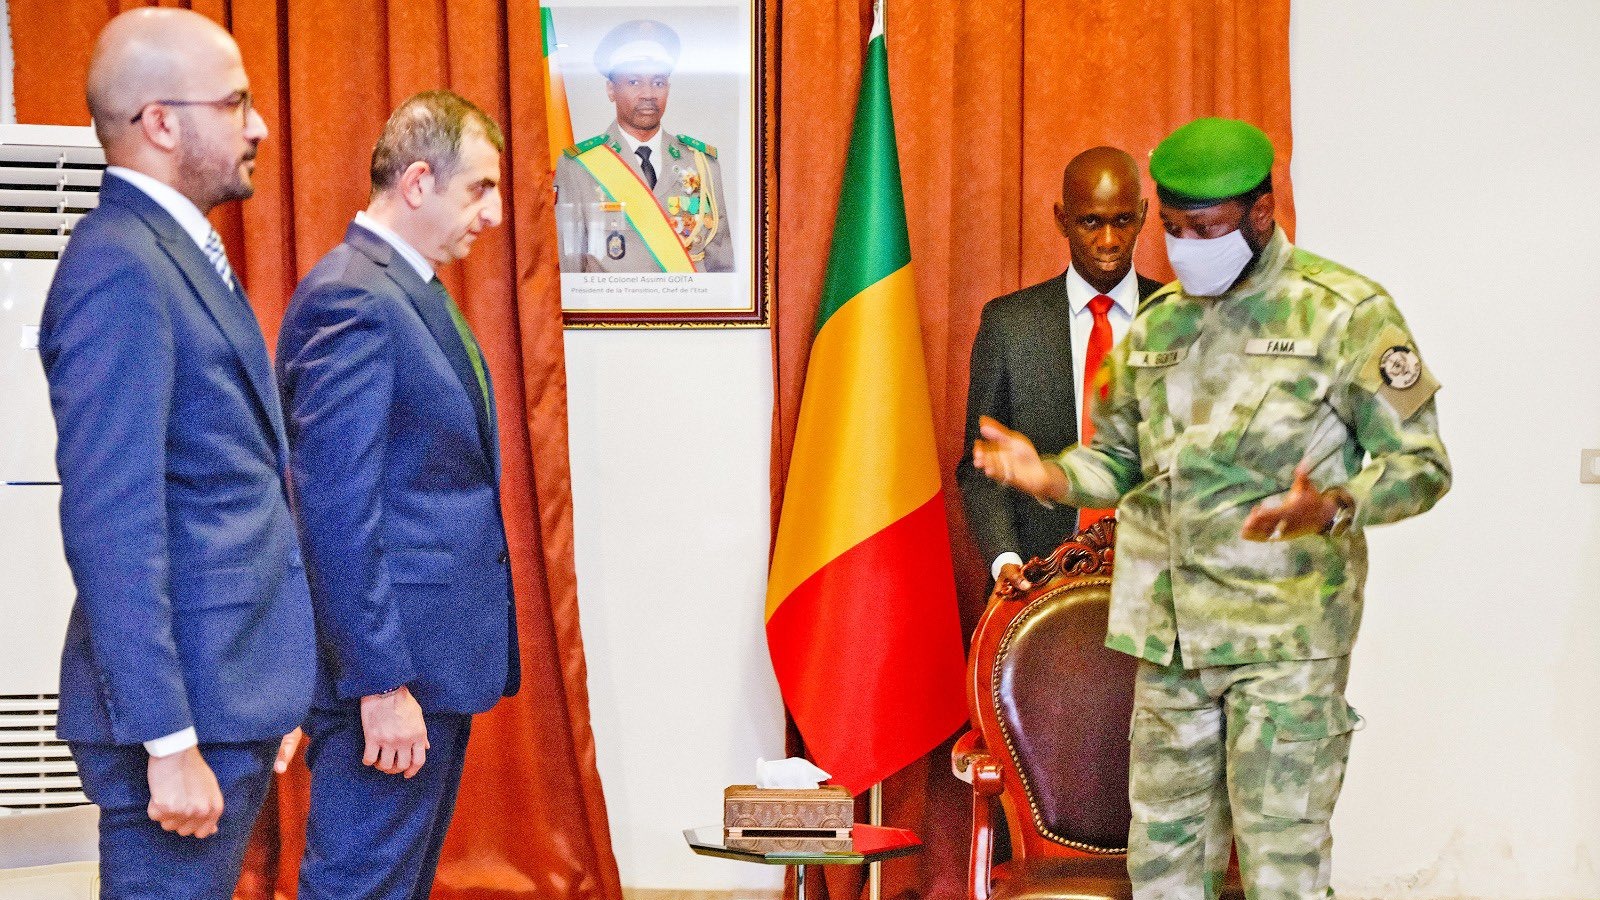 Baykar Genel Müdürü Haluk Bayraktar ve Mali Devlet Başkanı Assimi Goita